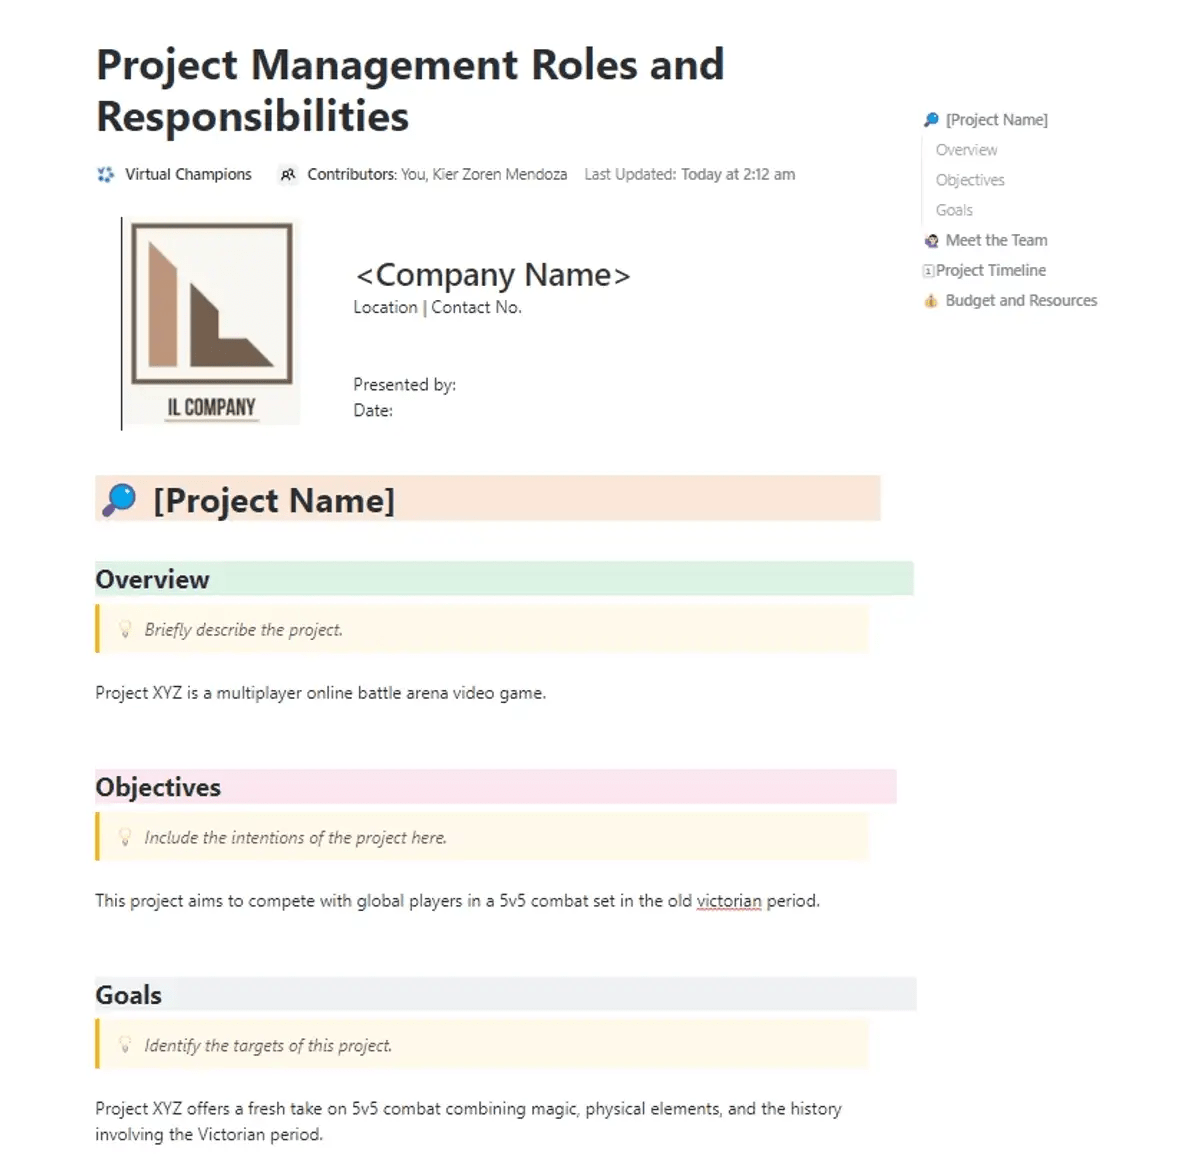 Definieer en beheer verantwoordelijkheden en taken met de Project Management Rollen en Verantwoordelijkheden Sjabloon op ClickUp